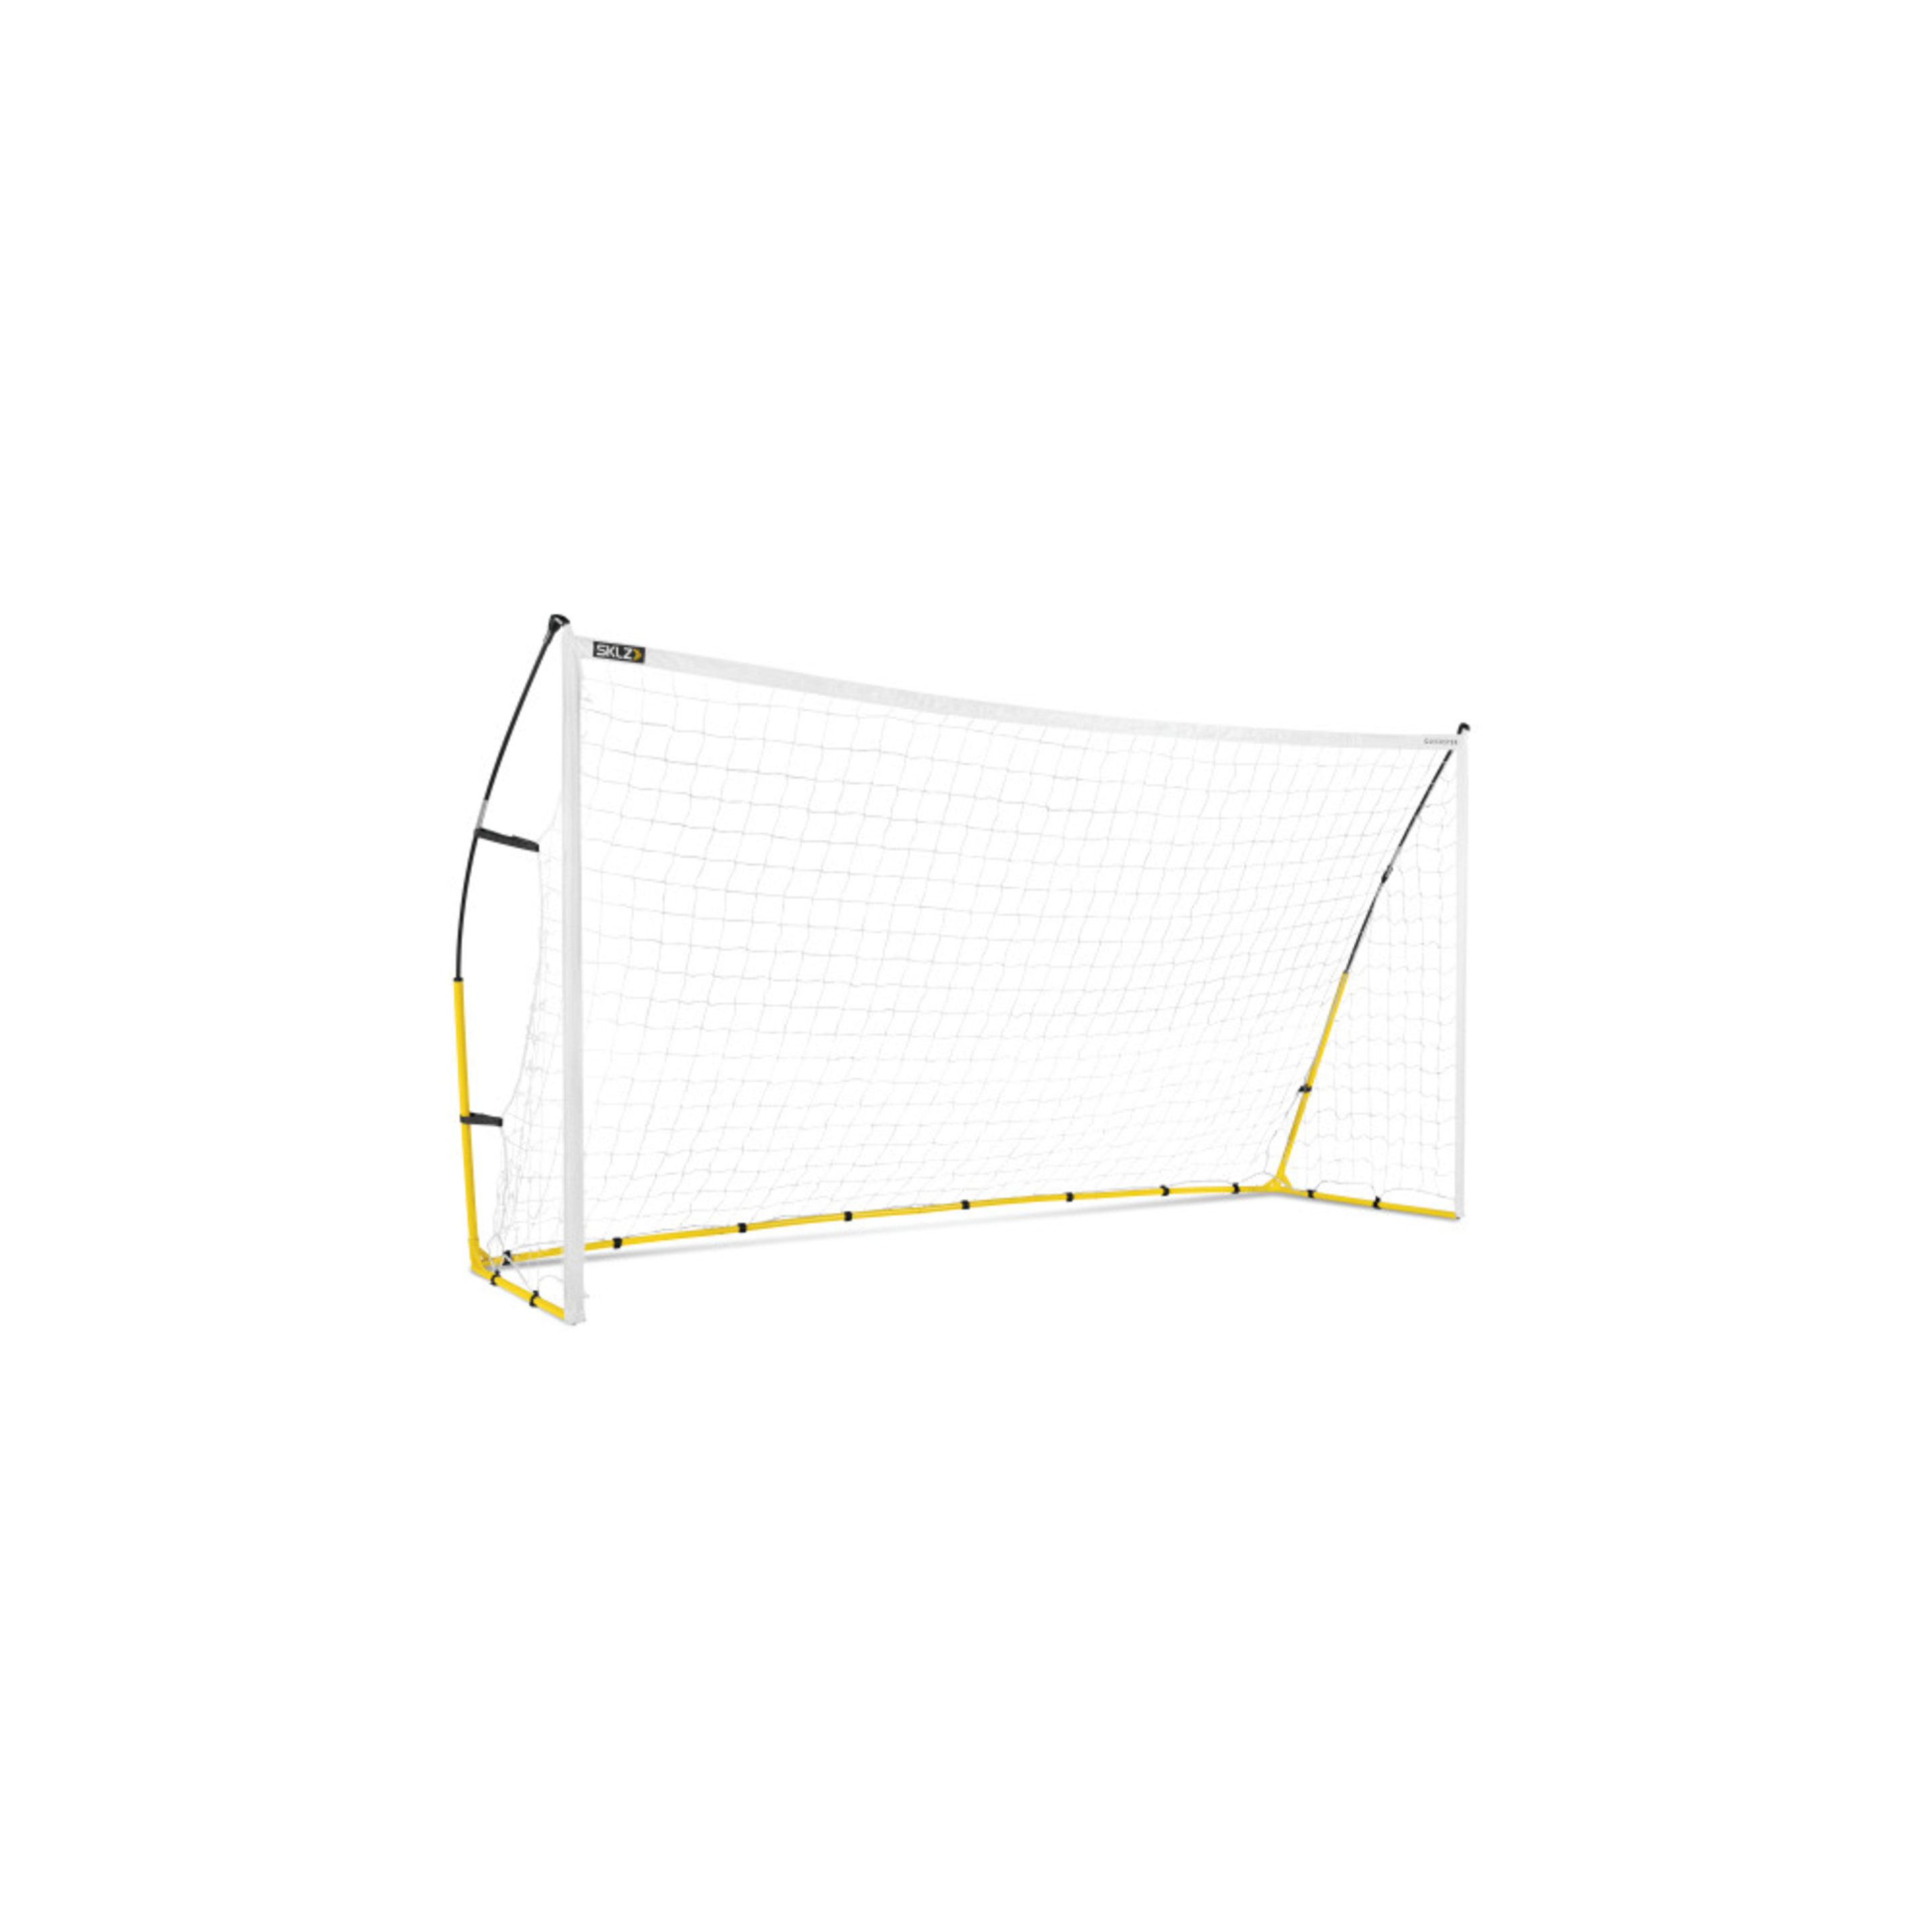 Sklz 360 X 180 Cm Quickster Football Goal & Portable Netting